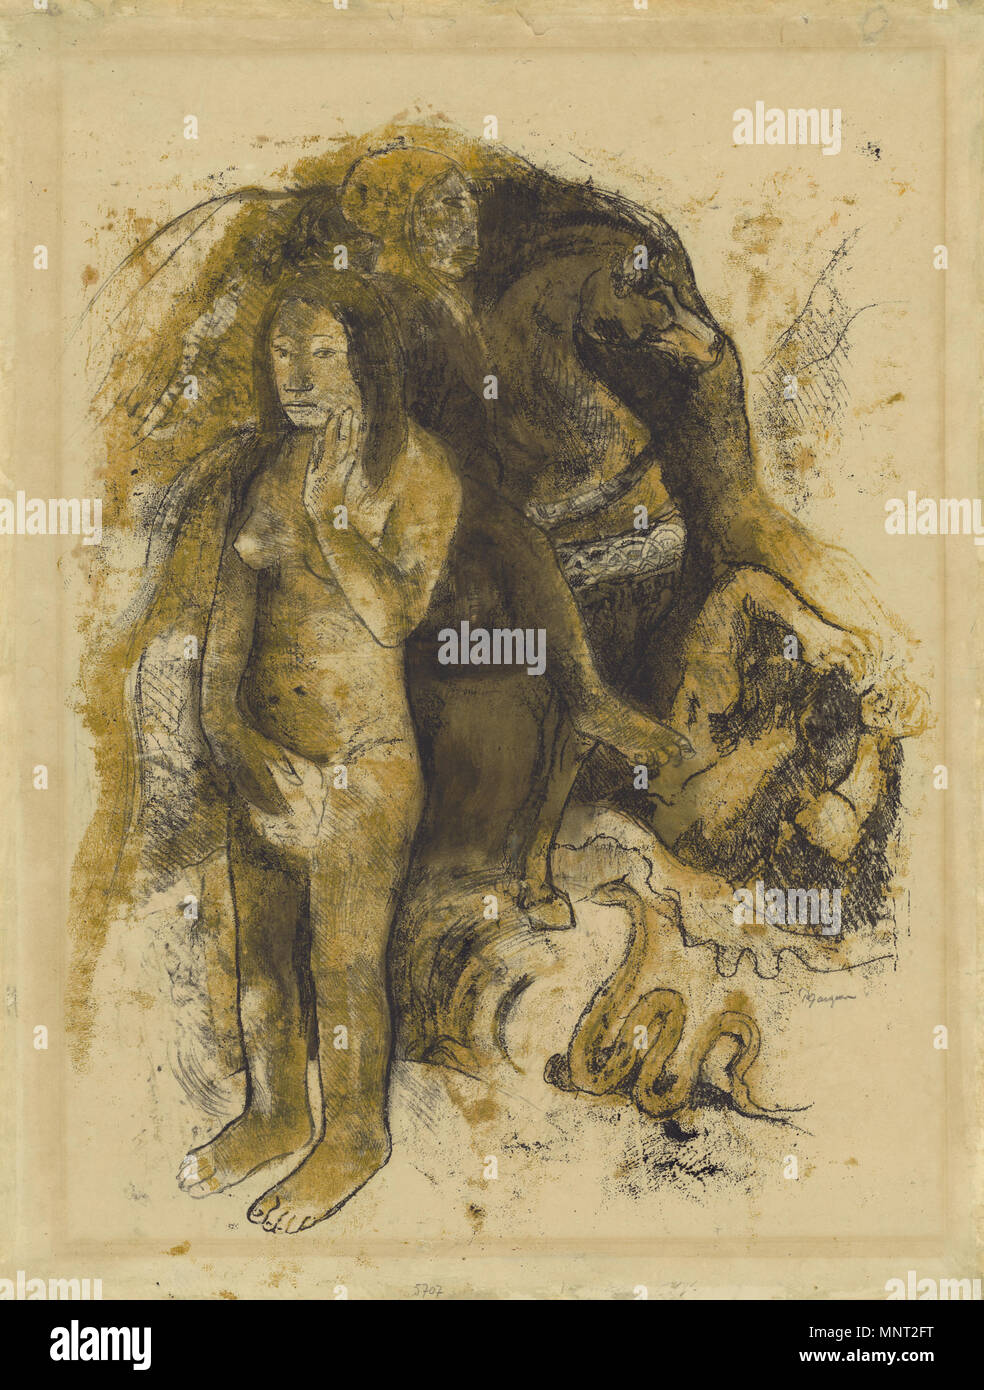 Eve ("l'Incubo"); Paul Gauguin (francese, 1848 - 1903); Sud Pacifico, Tahiti; circa 1899 - 1900; nero inchiostro della stampante color ocra, inchiostro, solvente liquido (trementina?) su carta intessuta (recto); grafite e blu pastello a matita con tracce di olio diluito medio (verso); 64,2 x 48,9 cm (25 1/4 x 19 1/4 in.); 2007.33 Eve ("l'Incubo") 966 Paul Gauguin, Eva (l'Incubo), 1899-1900 monotype Foto Stock